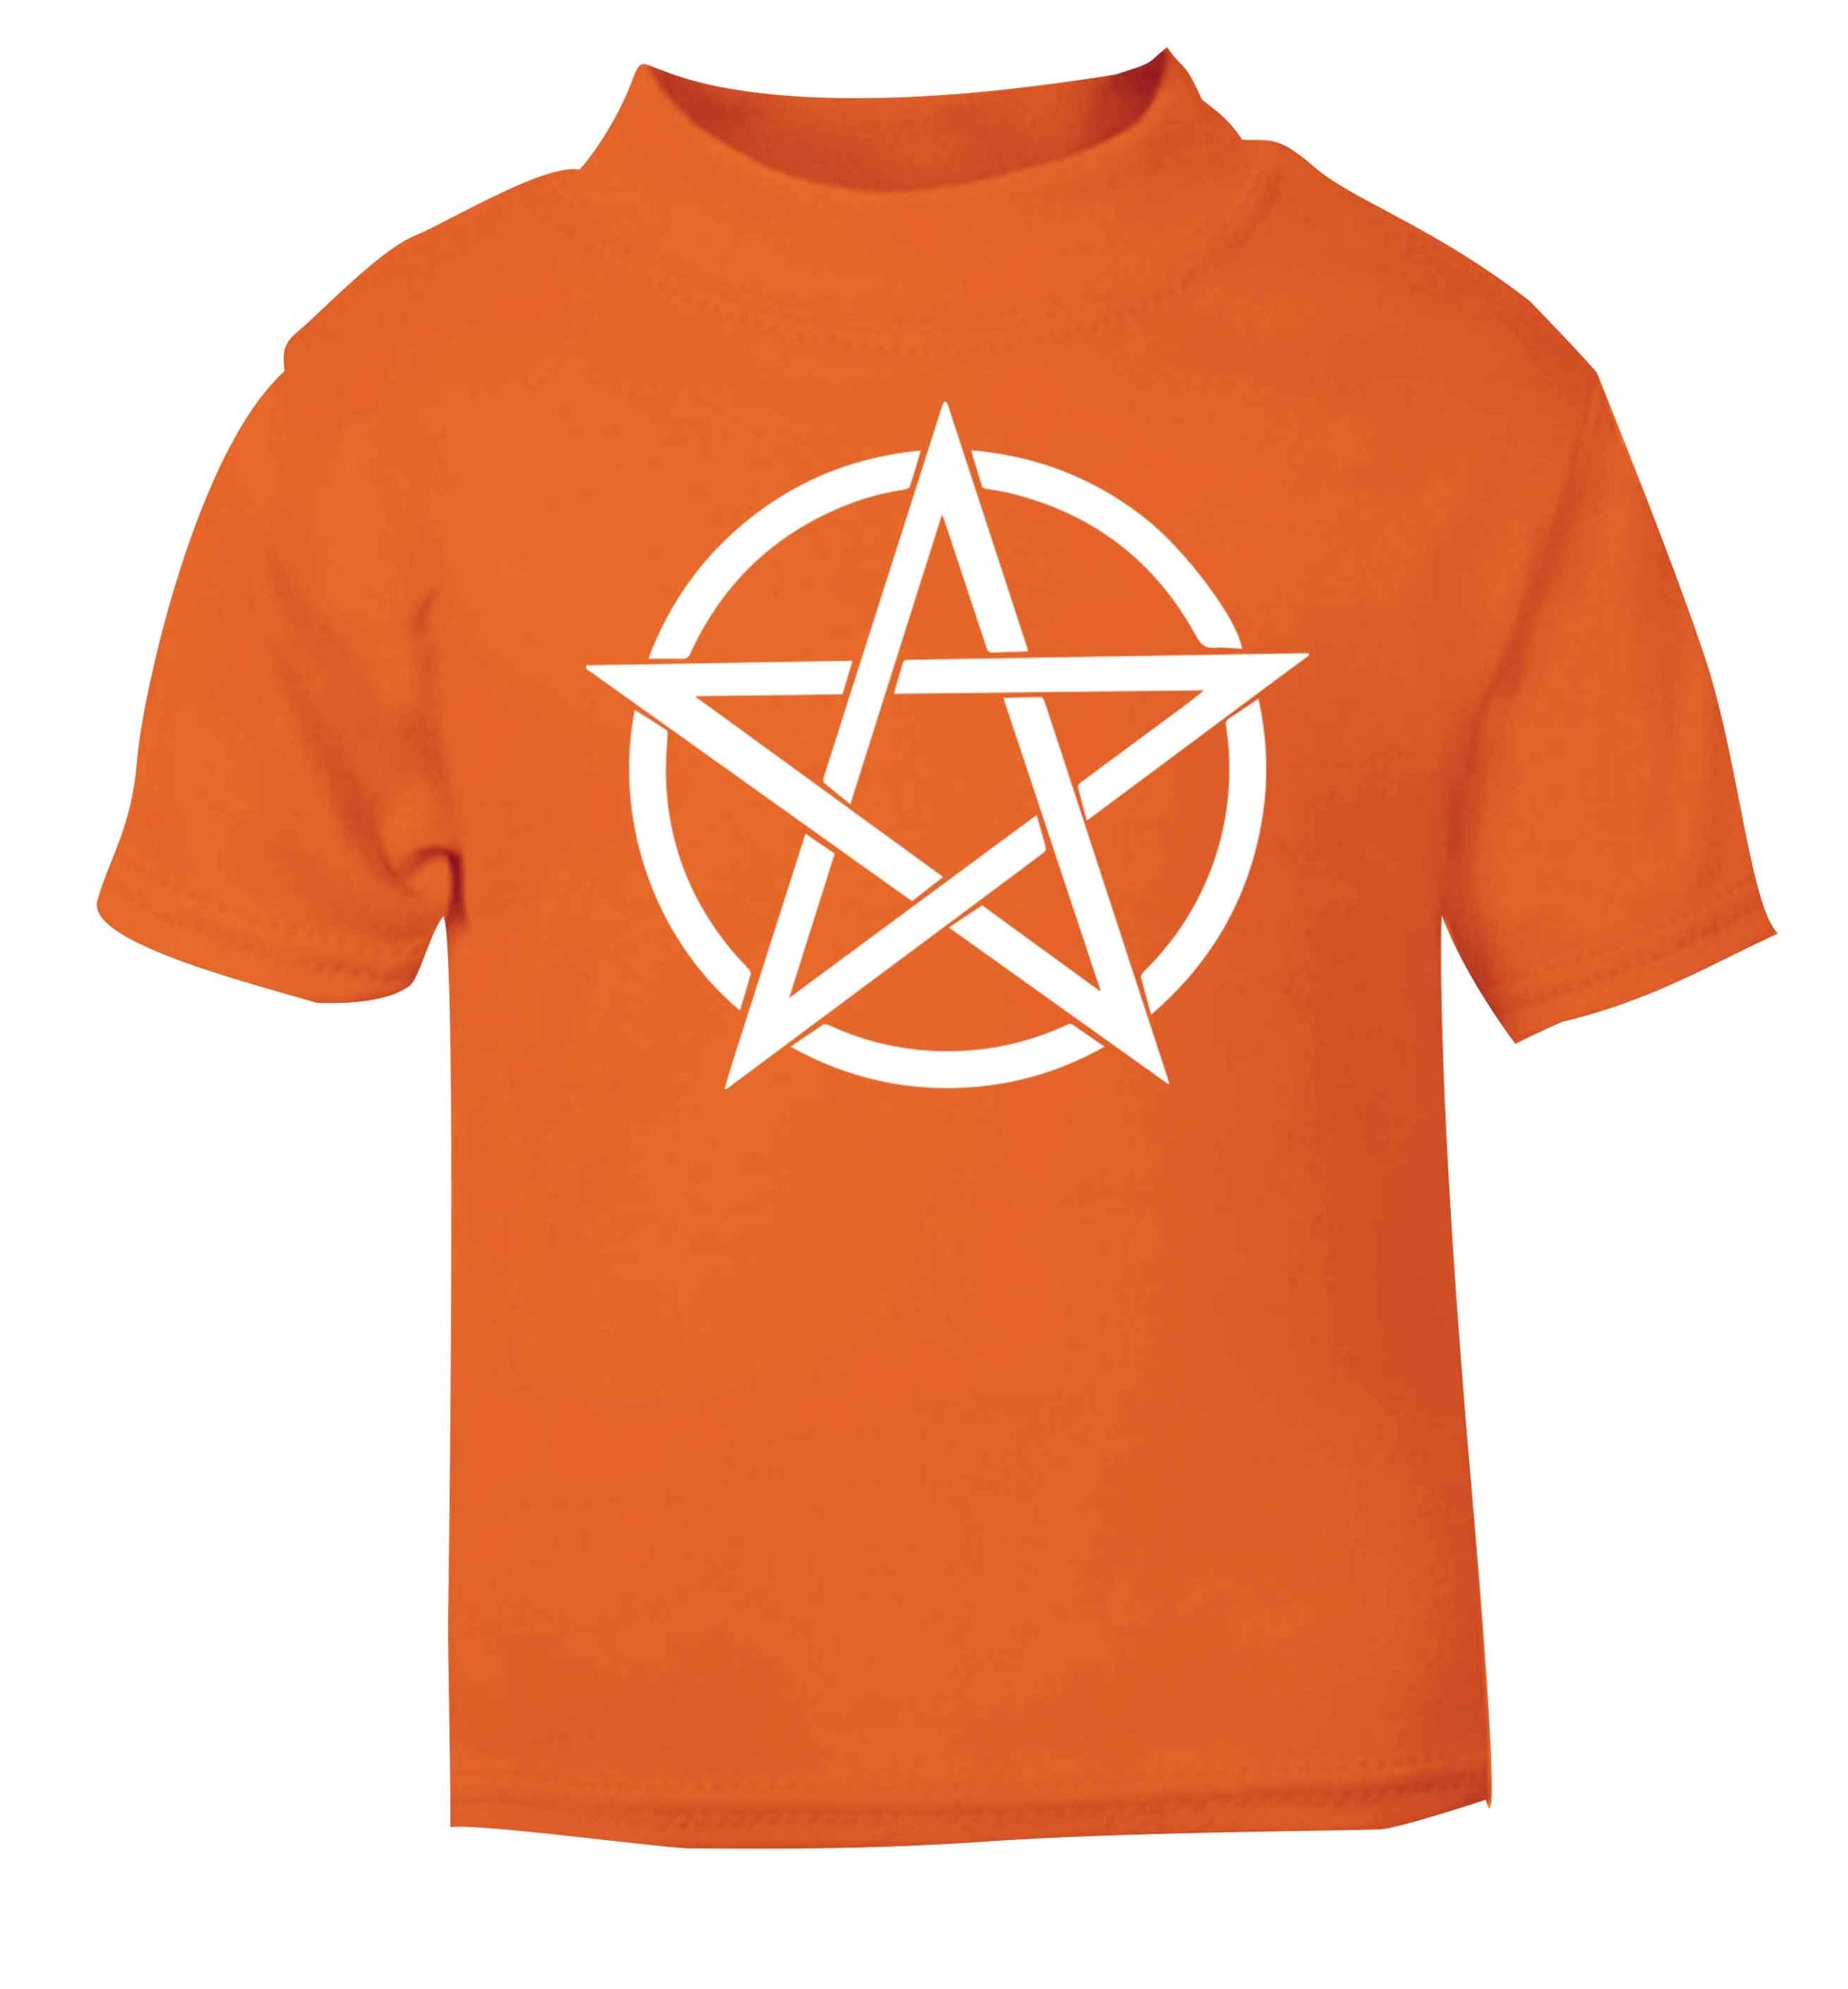 Pentagram symbol orange baby toddler Tshirt 2 Years